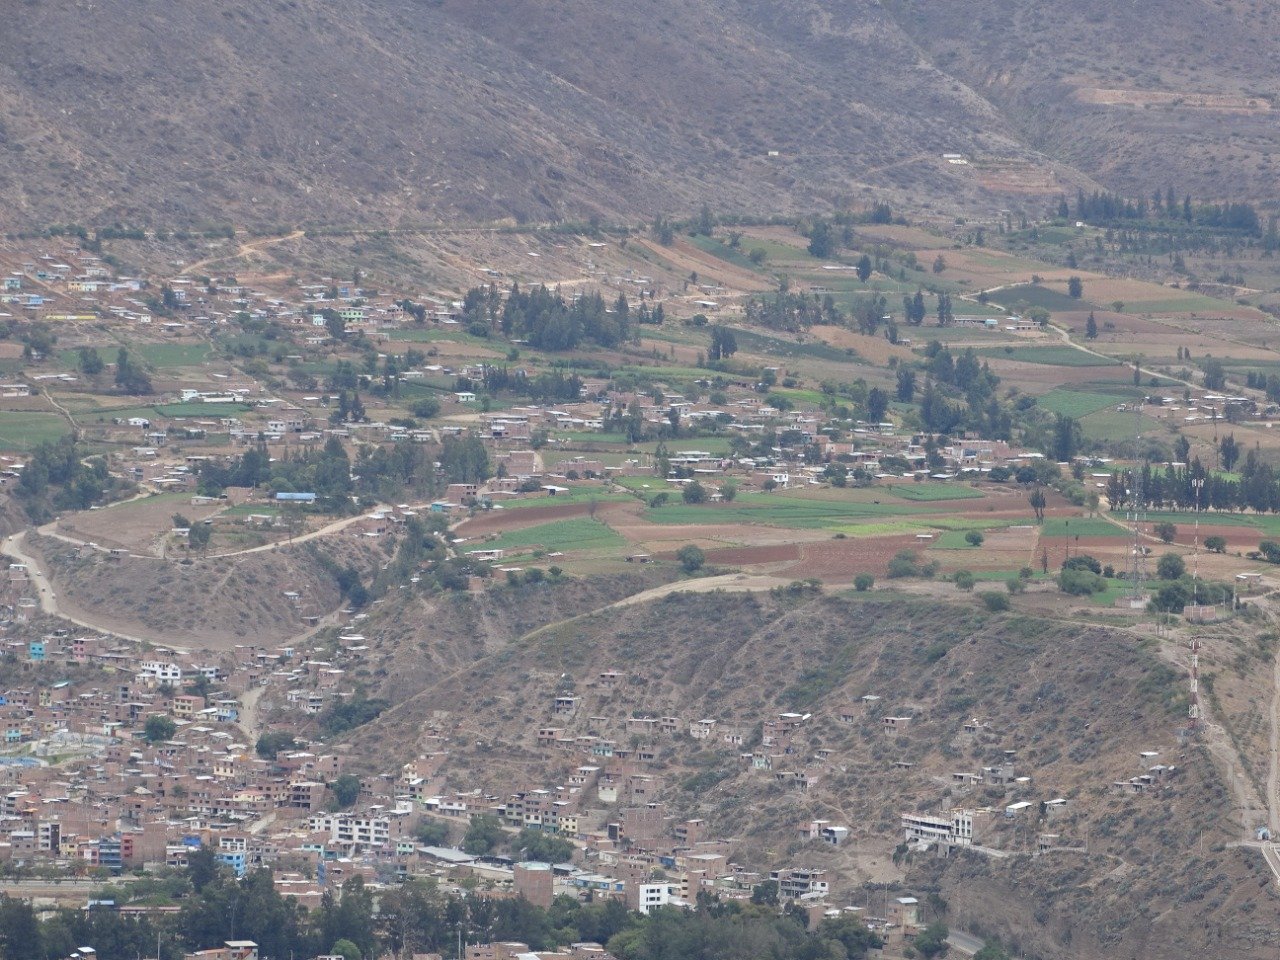 Pobladores de Marabamba están sin servicio de agua potable por más de 15 días